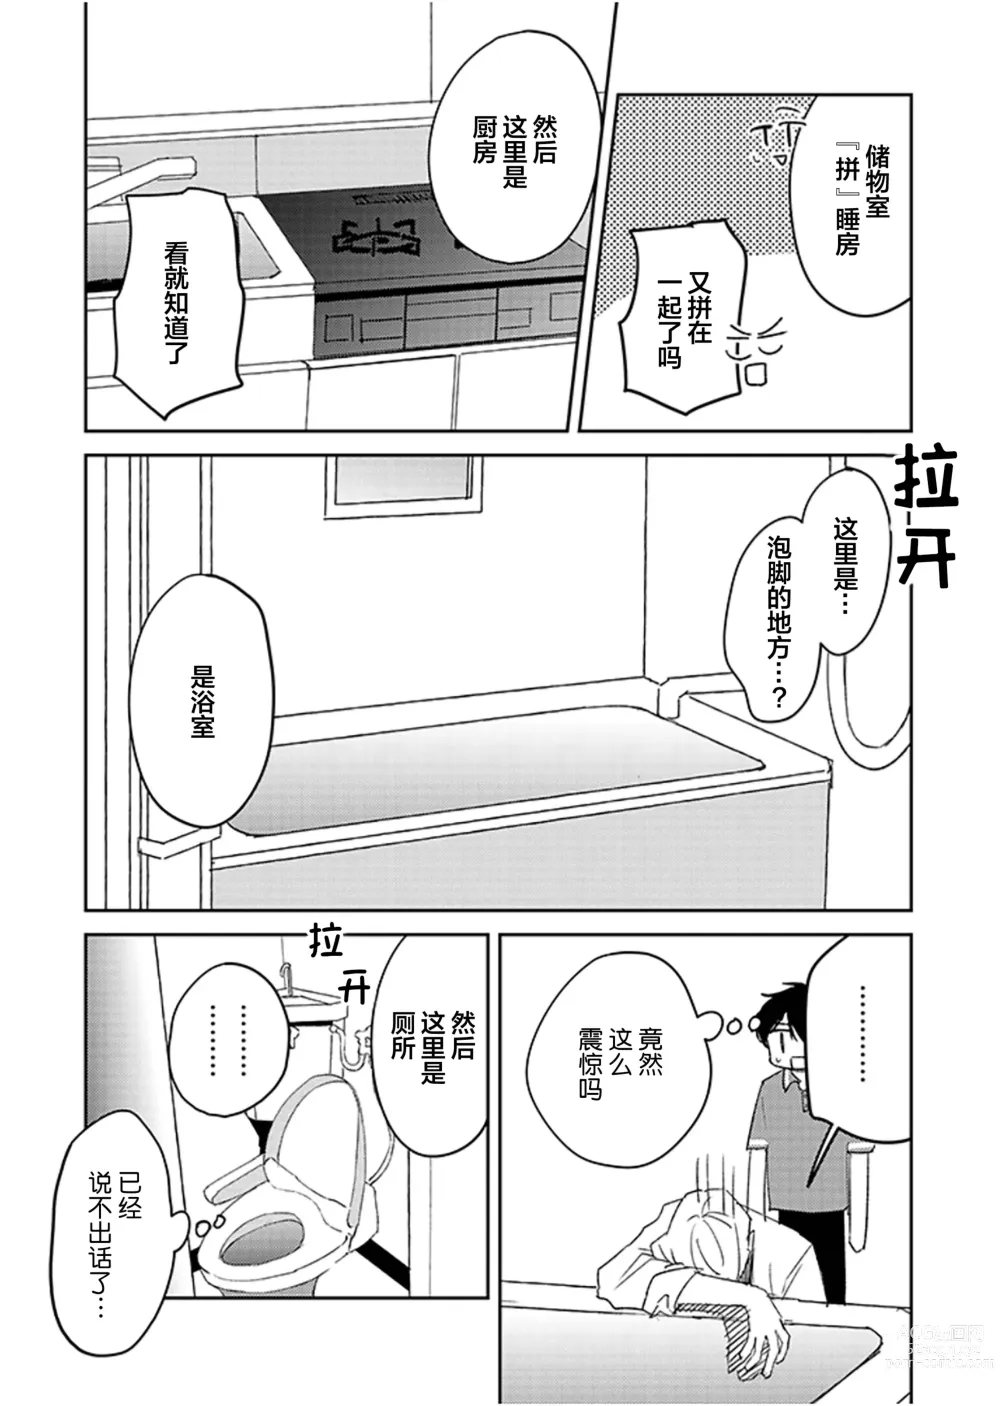 Page 23 of manga 虽然但是许诺终身的幼驯染是我的仆从!?